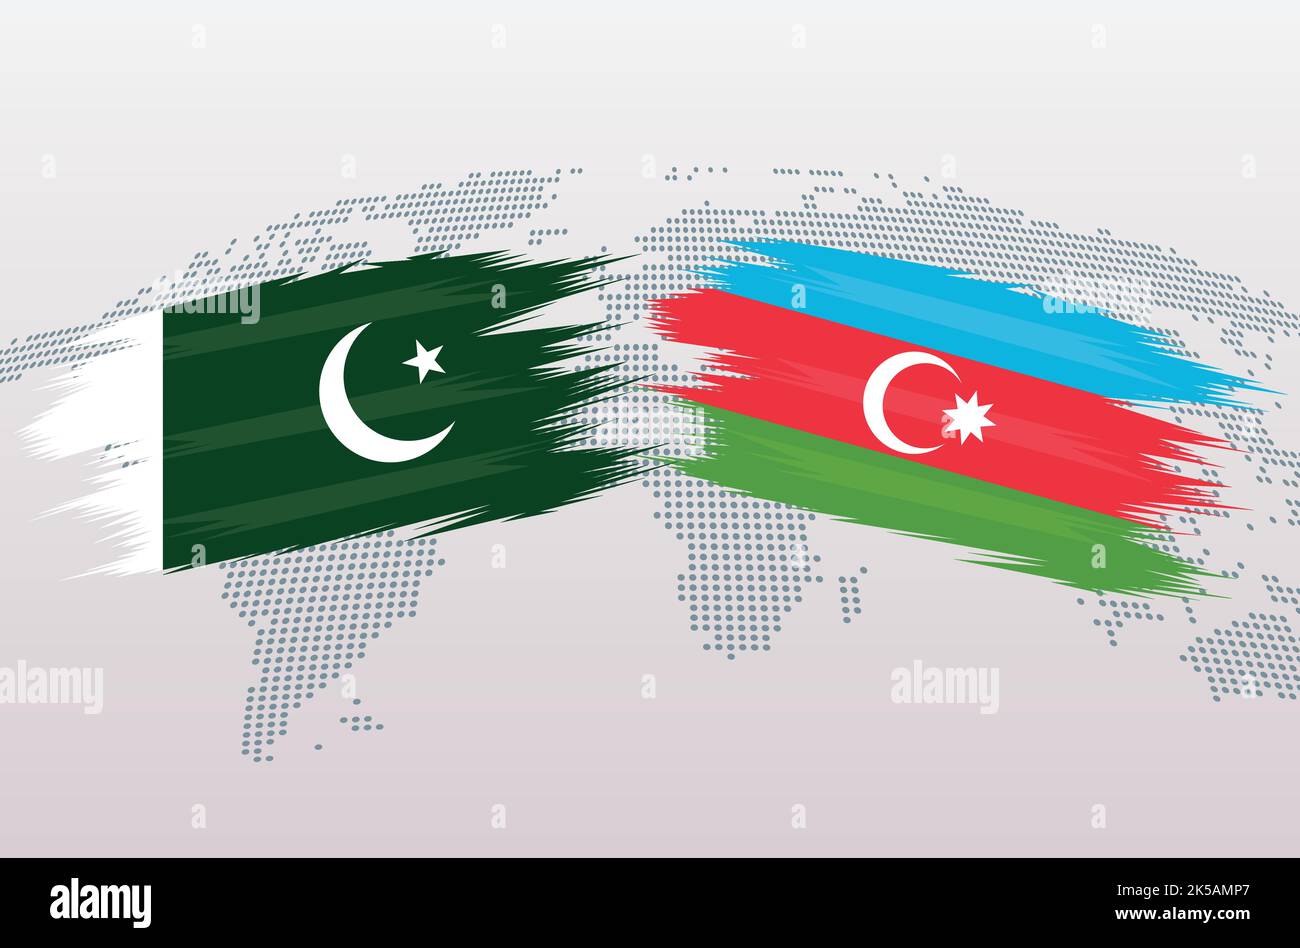 Bandiere Pakistan vs Azerbaigian. Bandiere della Repubblica islamica del Pakistan contro Azerbaigian, isolate su sfondo grigio della mappa del mondo. Illustrazione vettoriale. Illustrazione Vettoriale